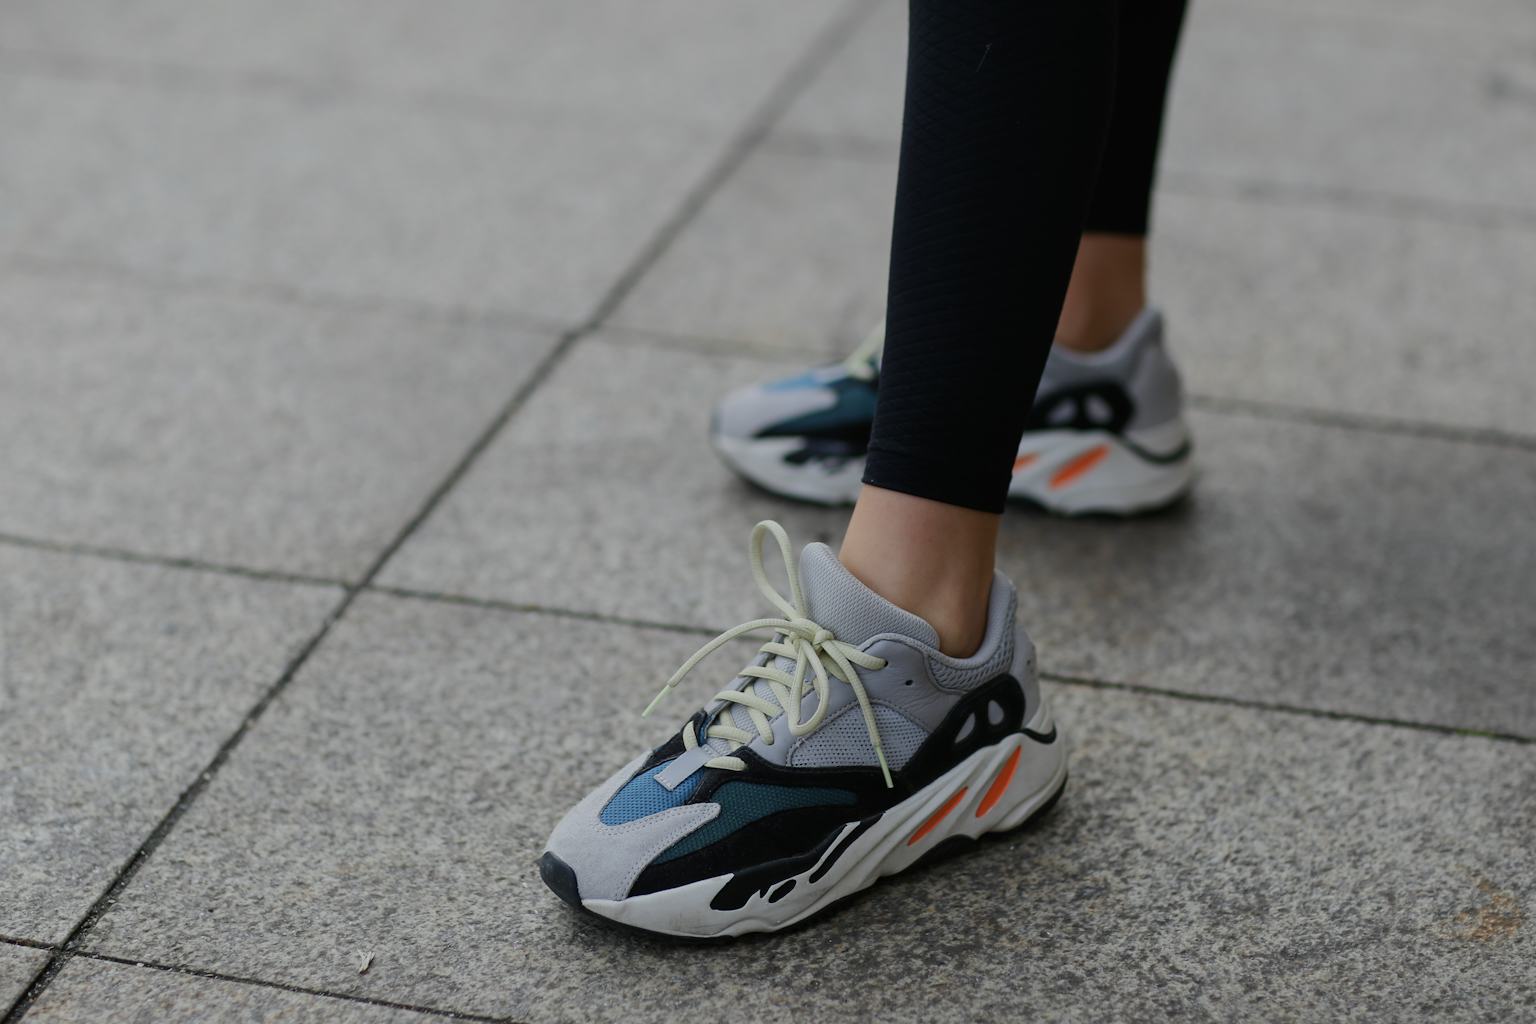 Adidas’ Yeezy 700 “Wave Runner” sneaker is finally releasing again